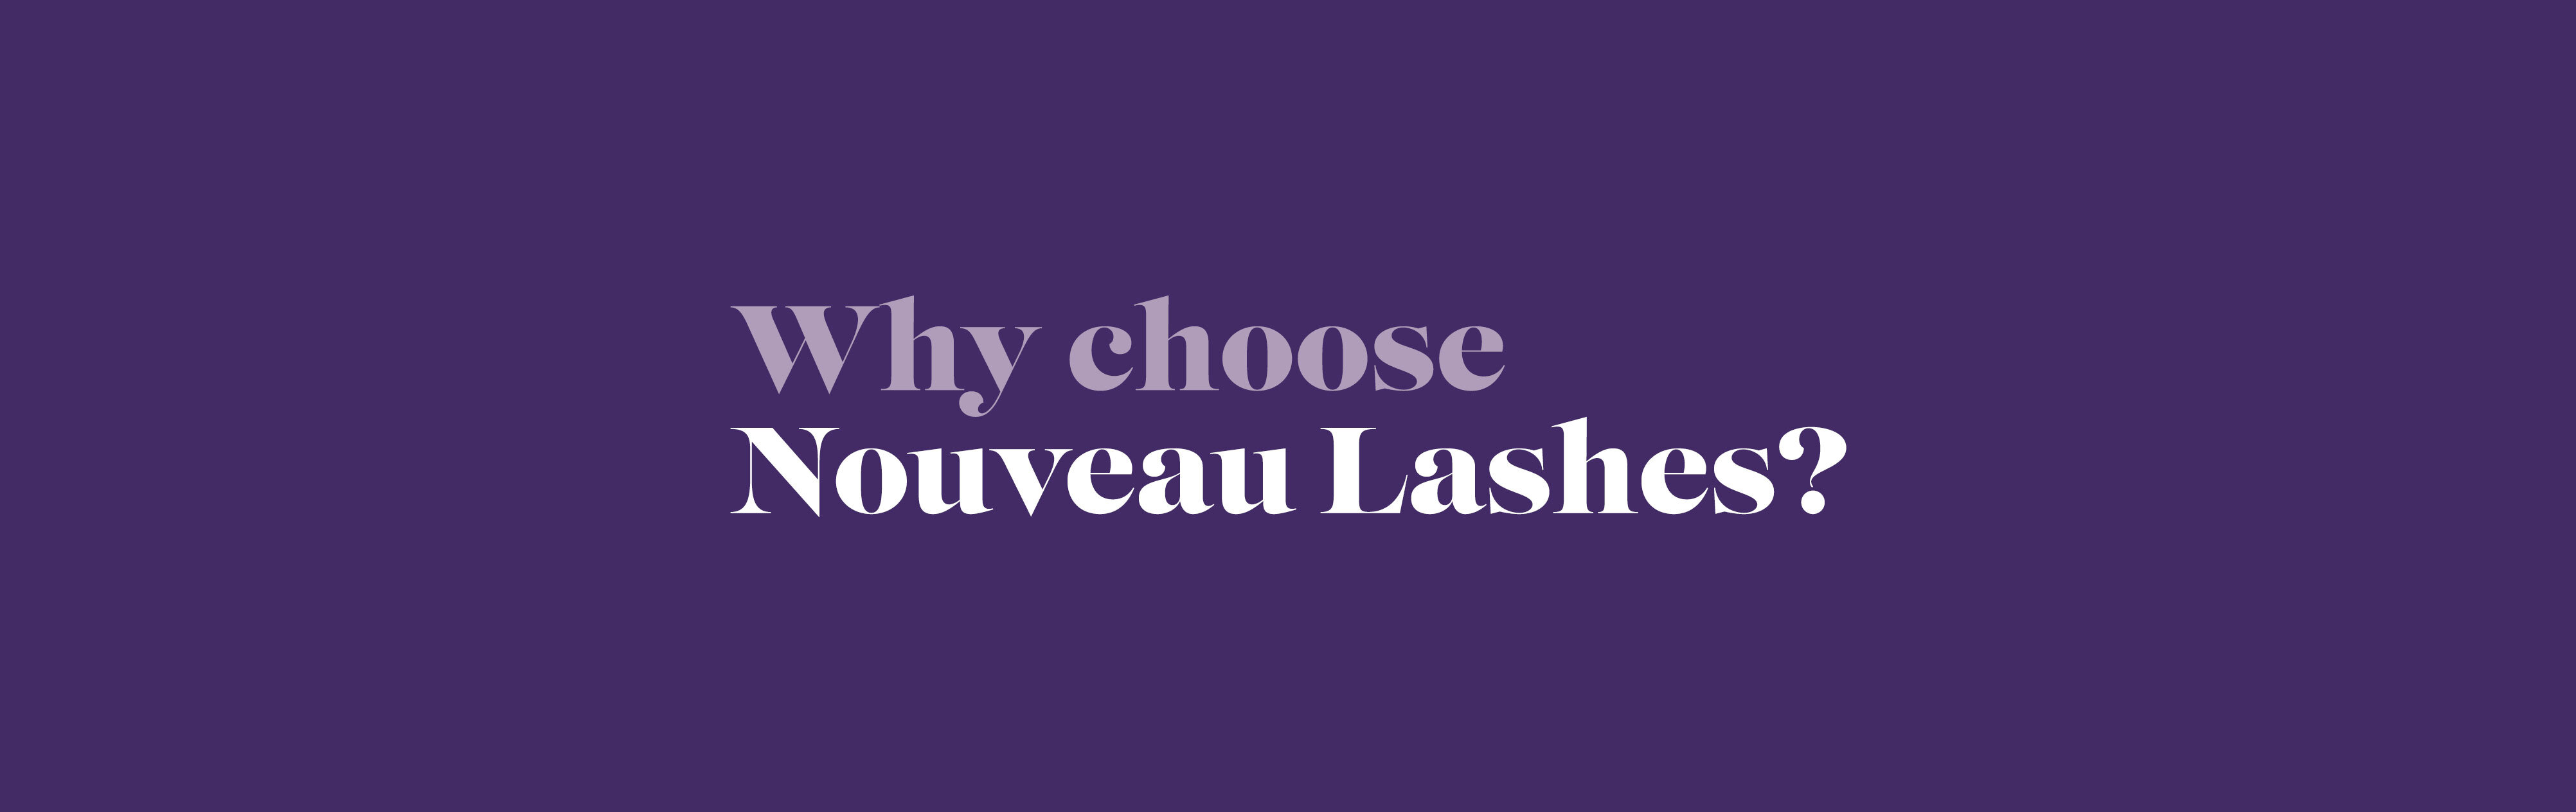 A Beautiful Bond: Why choose Nouveau Lashes?